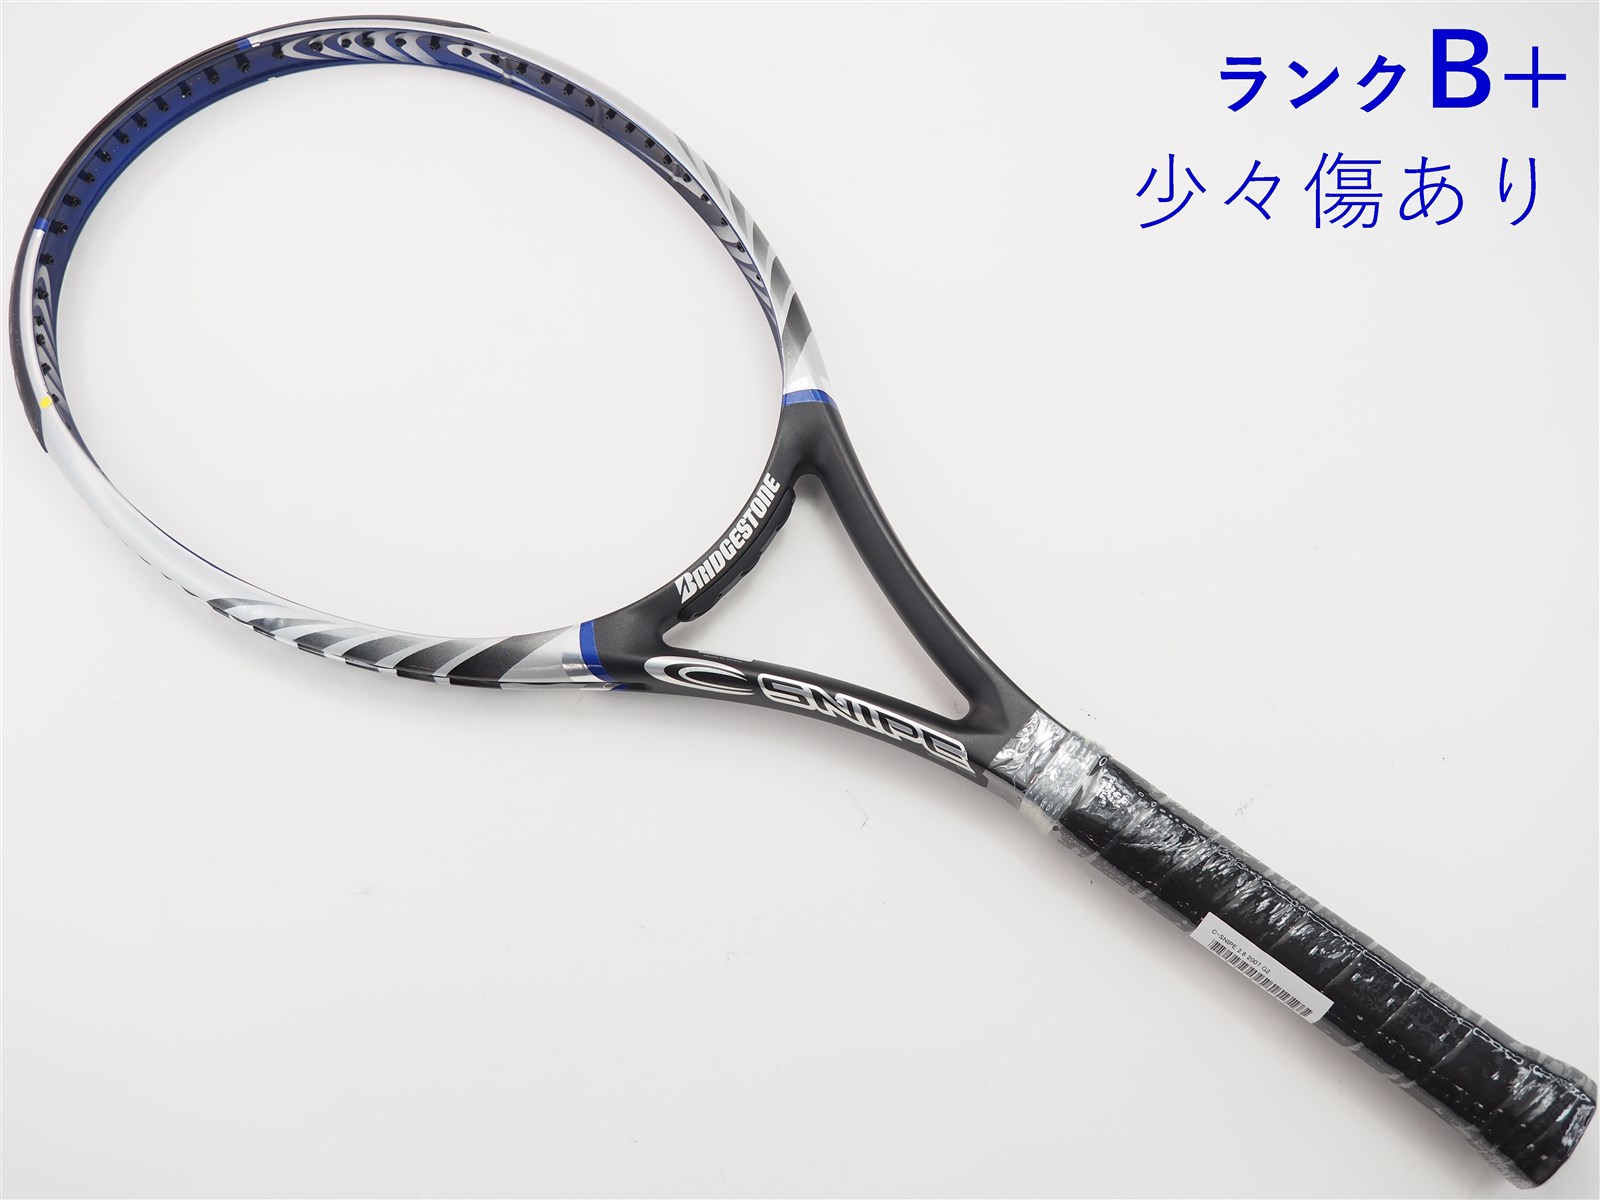 テニスラケット ブリヂストン シースナイプ 2.8 2007年モデル (G2